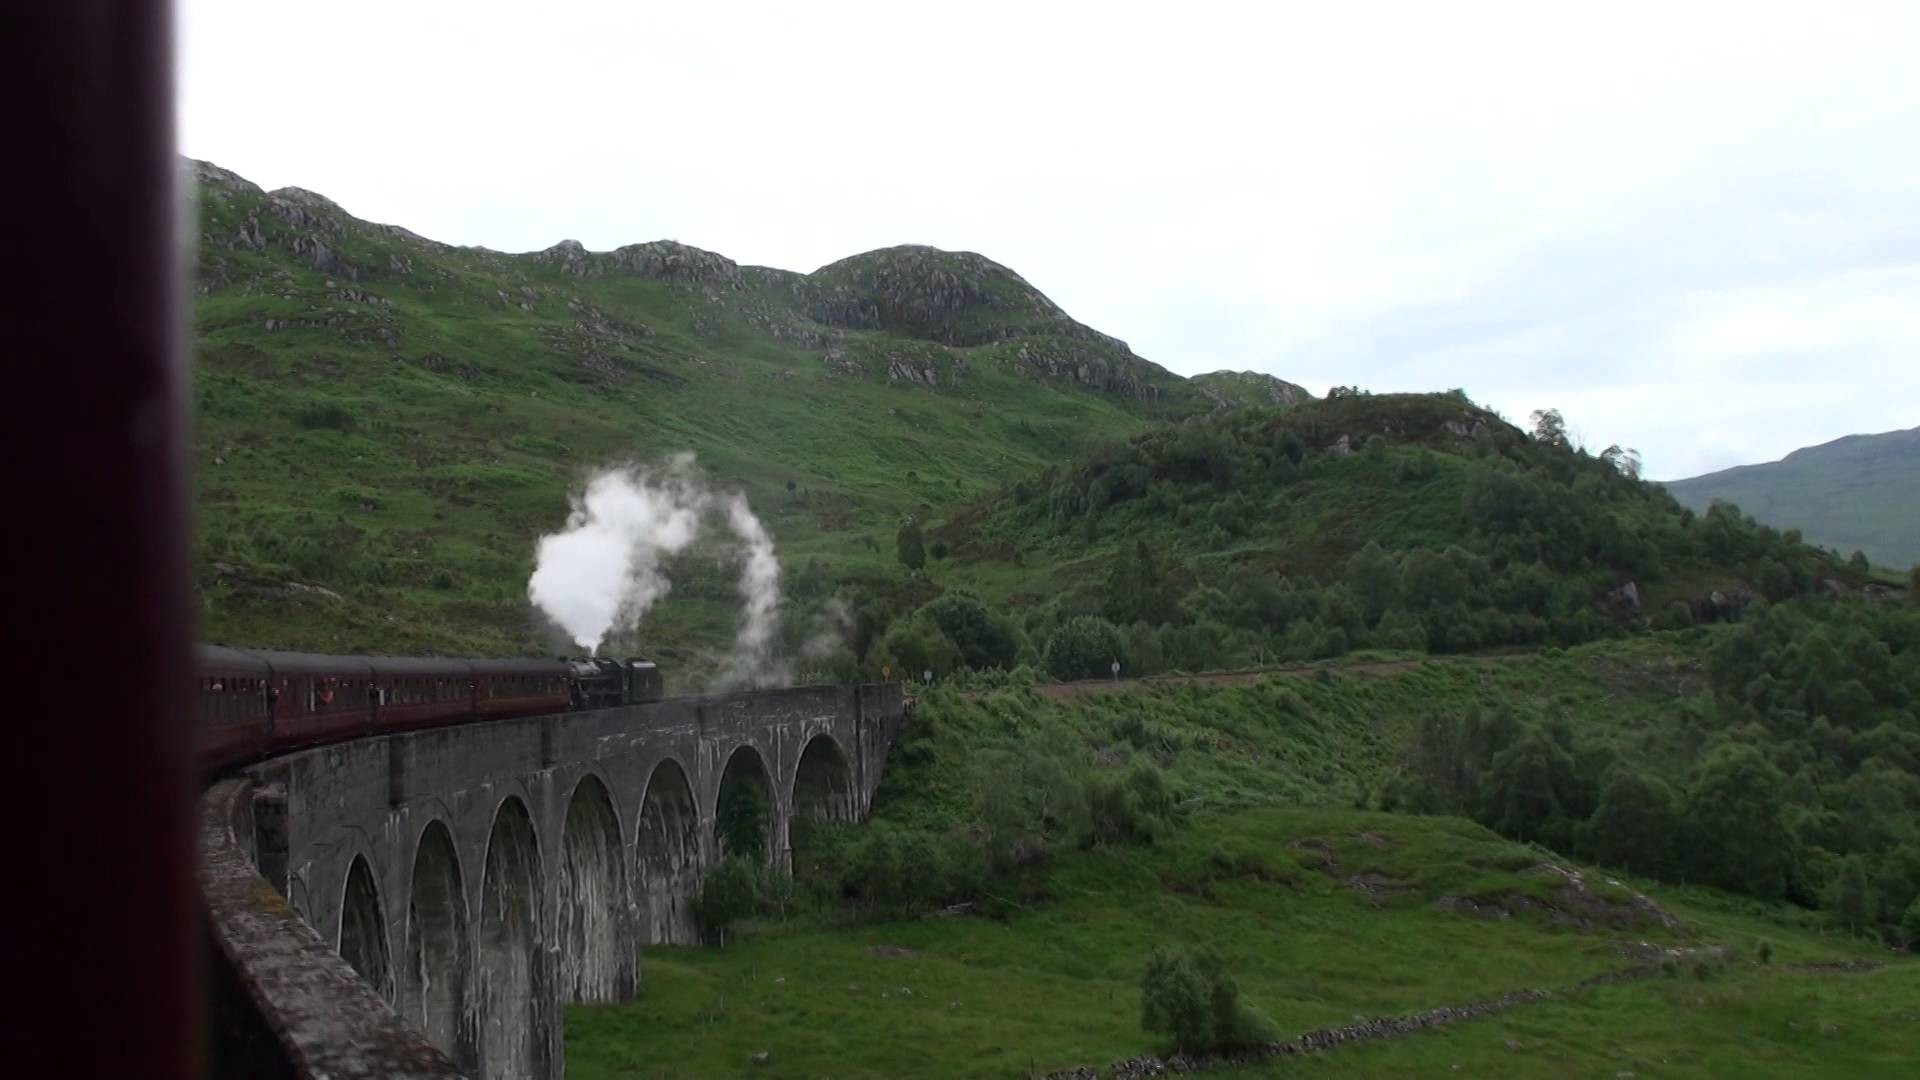 1920x1080 Hogwarts Express Jacobite M FTW @ Glenfinnan Viaduct 27 07 2015a